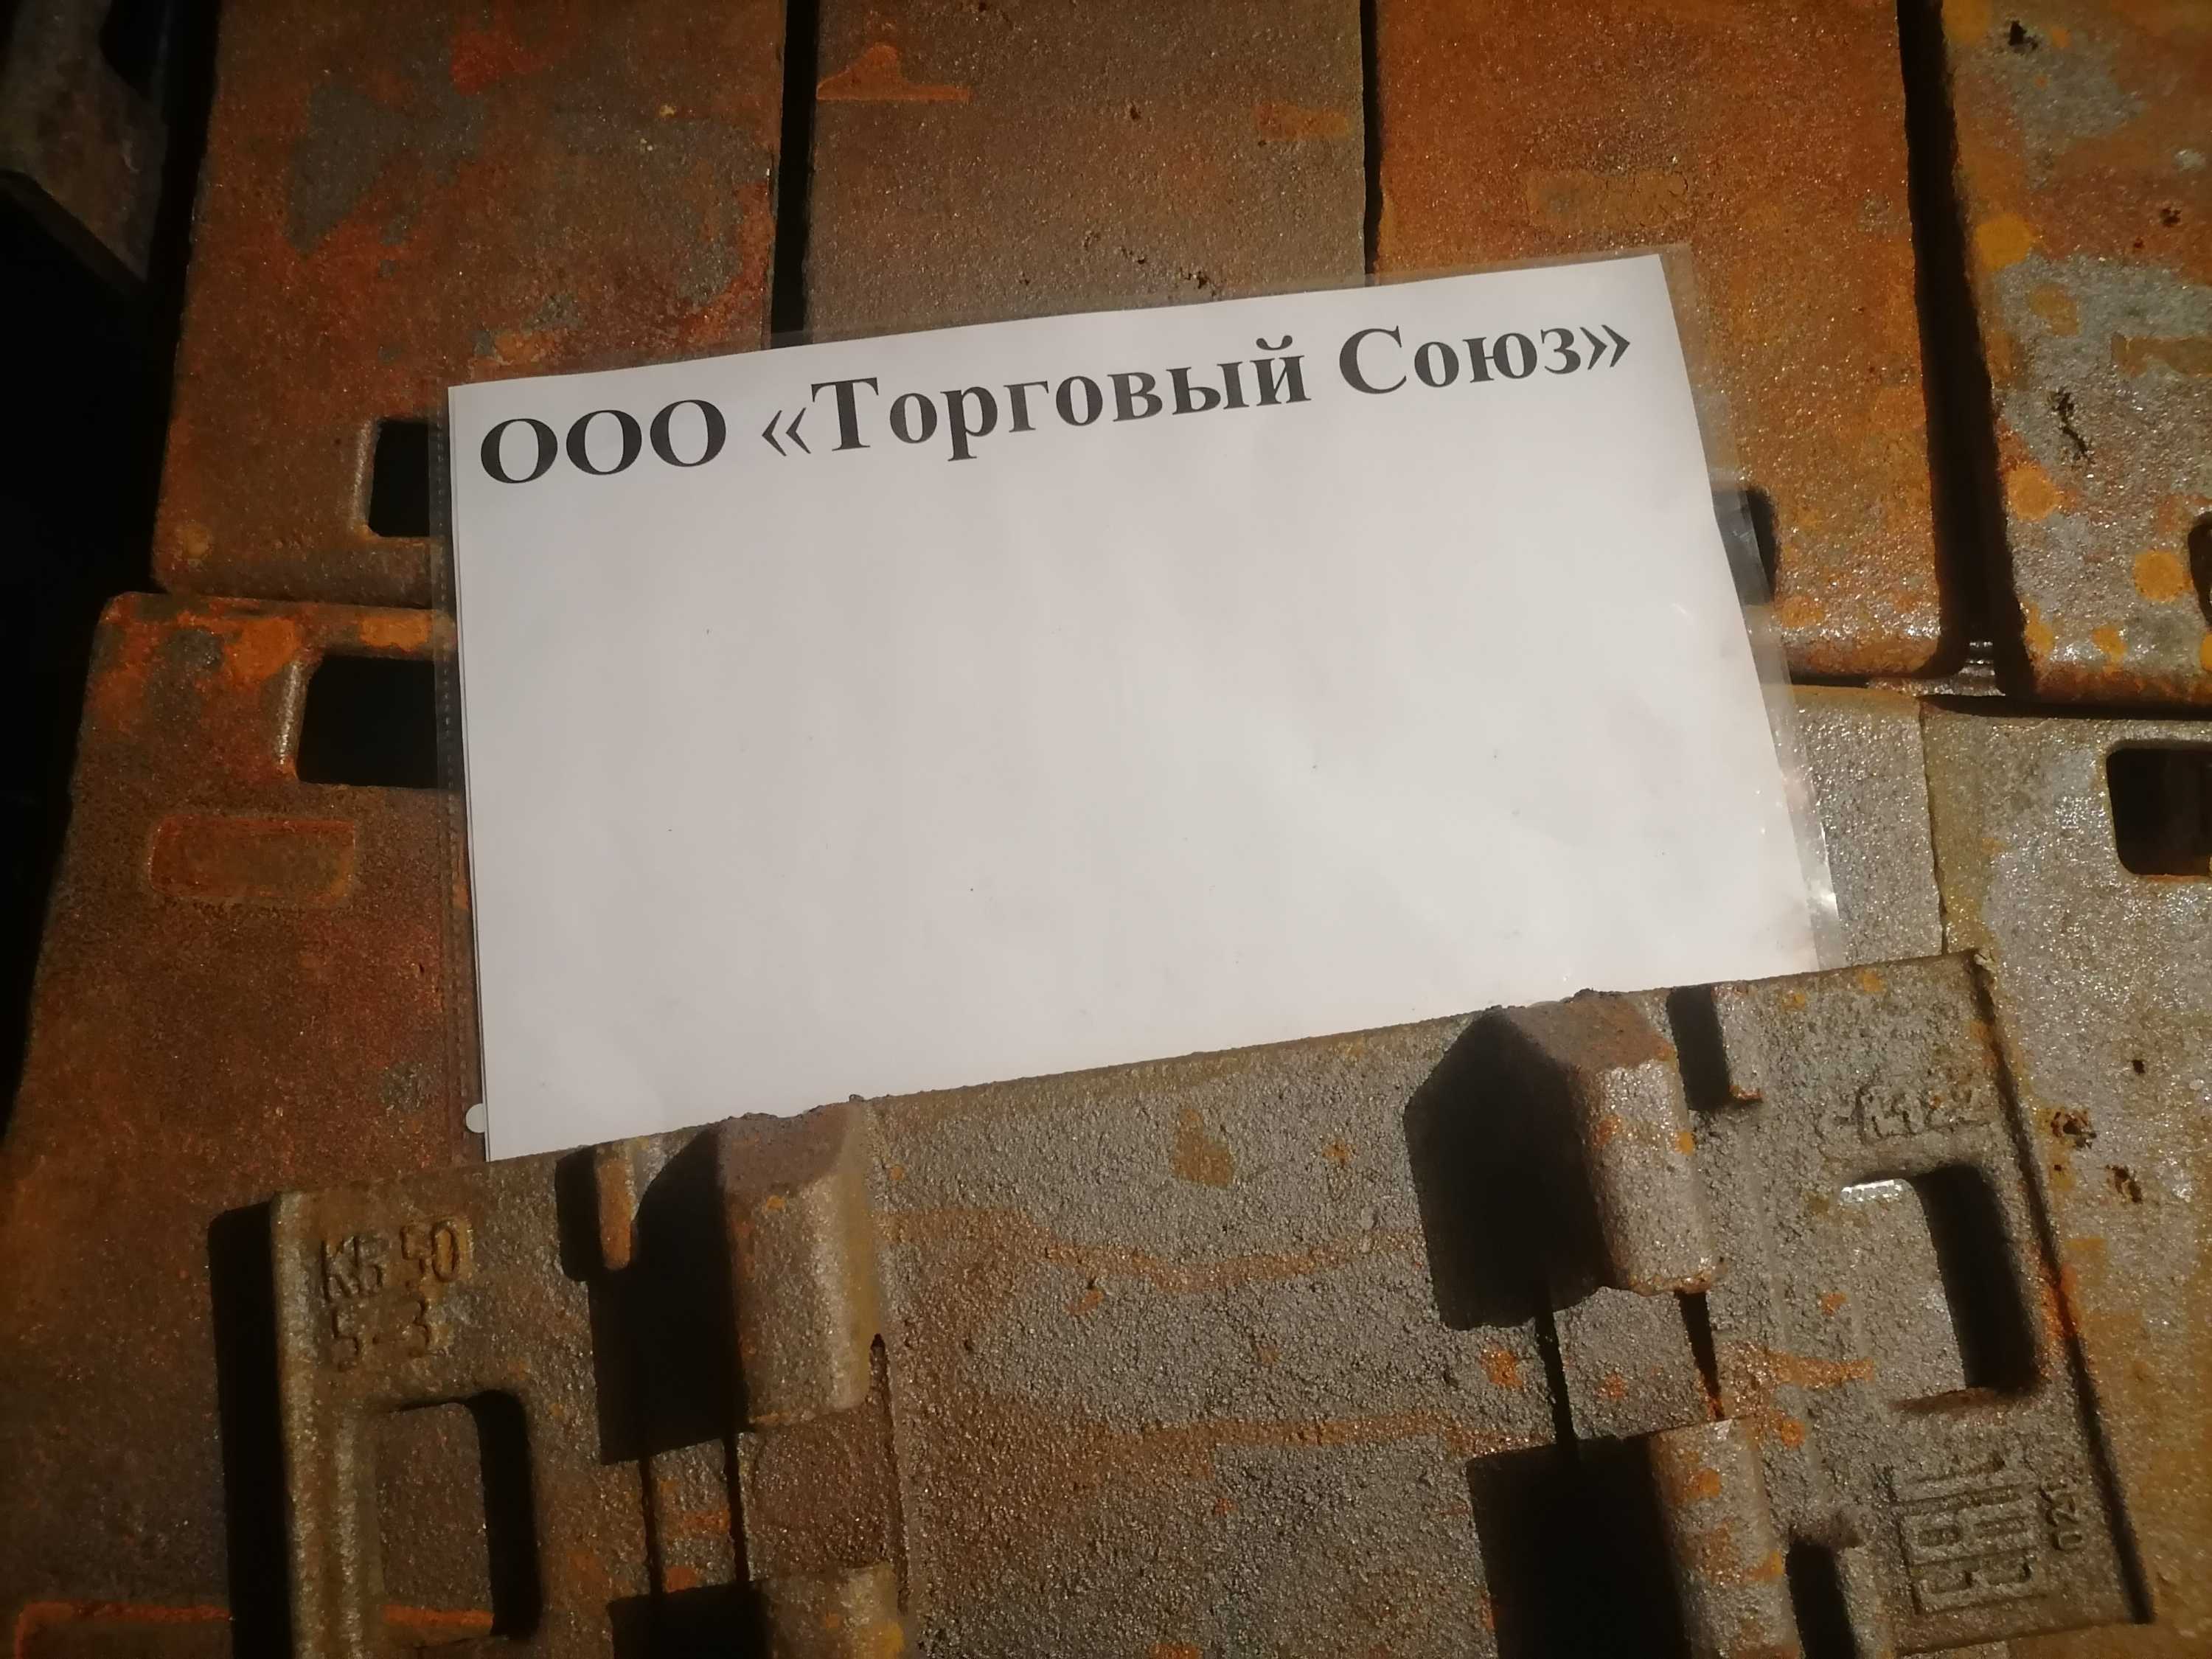 Подкладка КБ50 (новая) от 1150 руб/шт с НДС